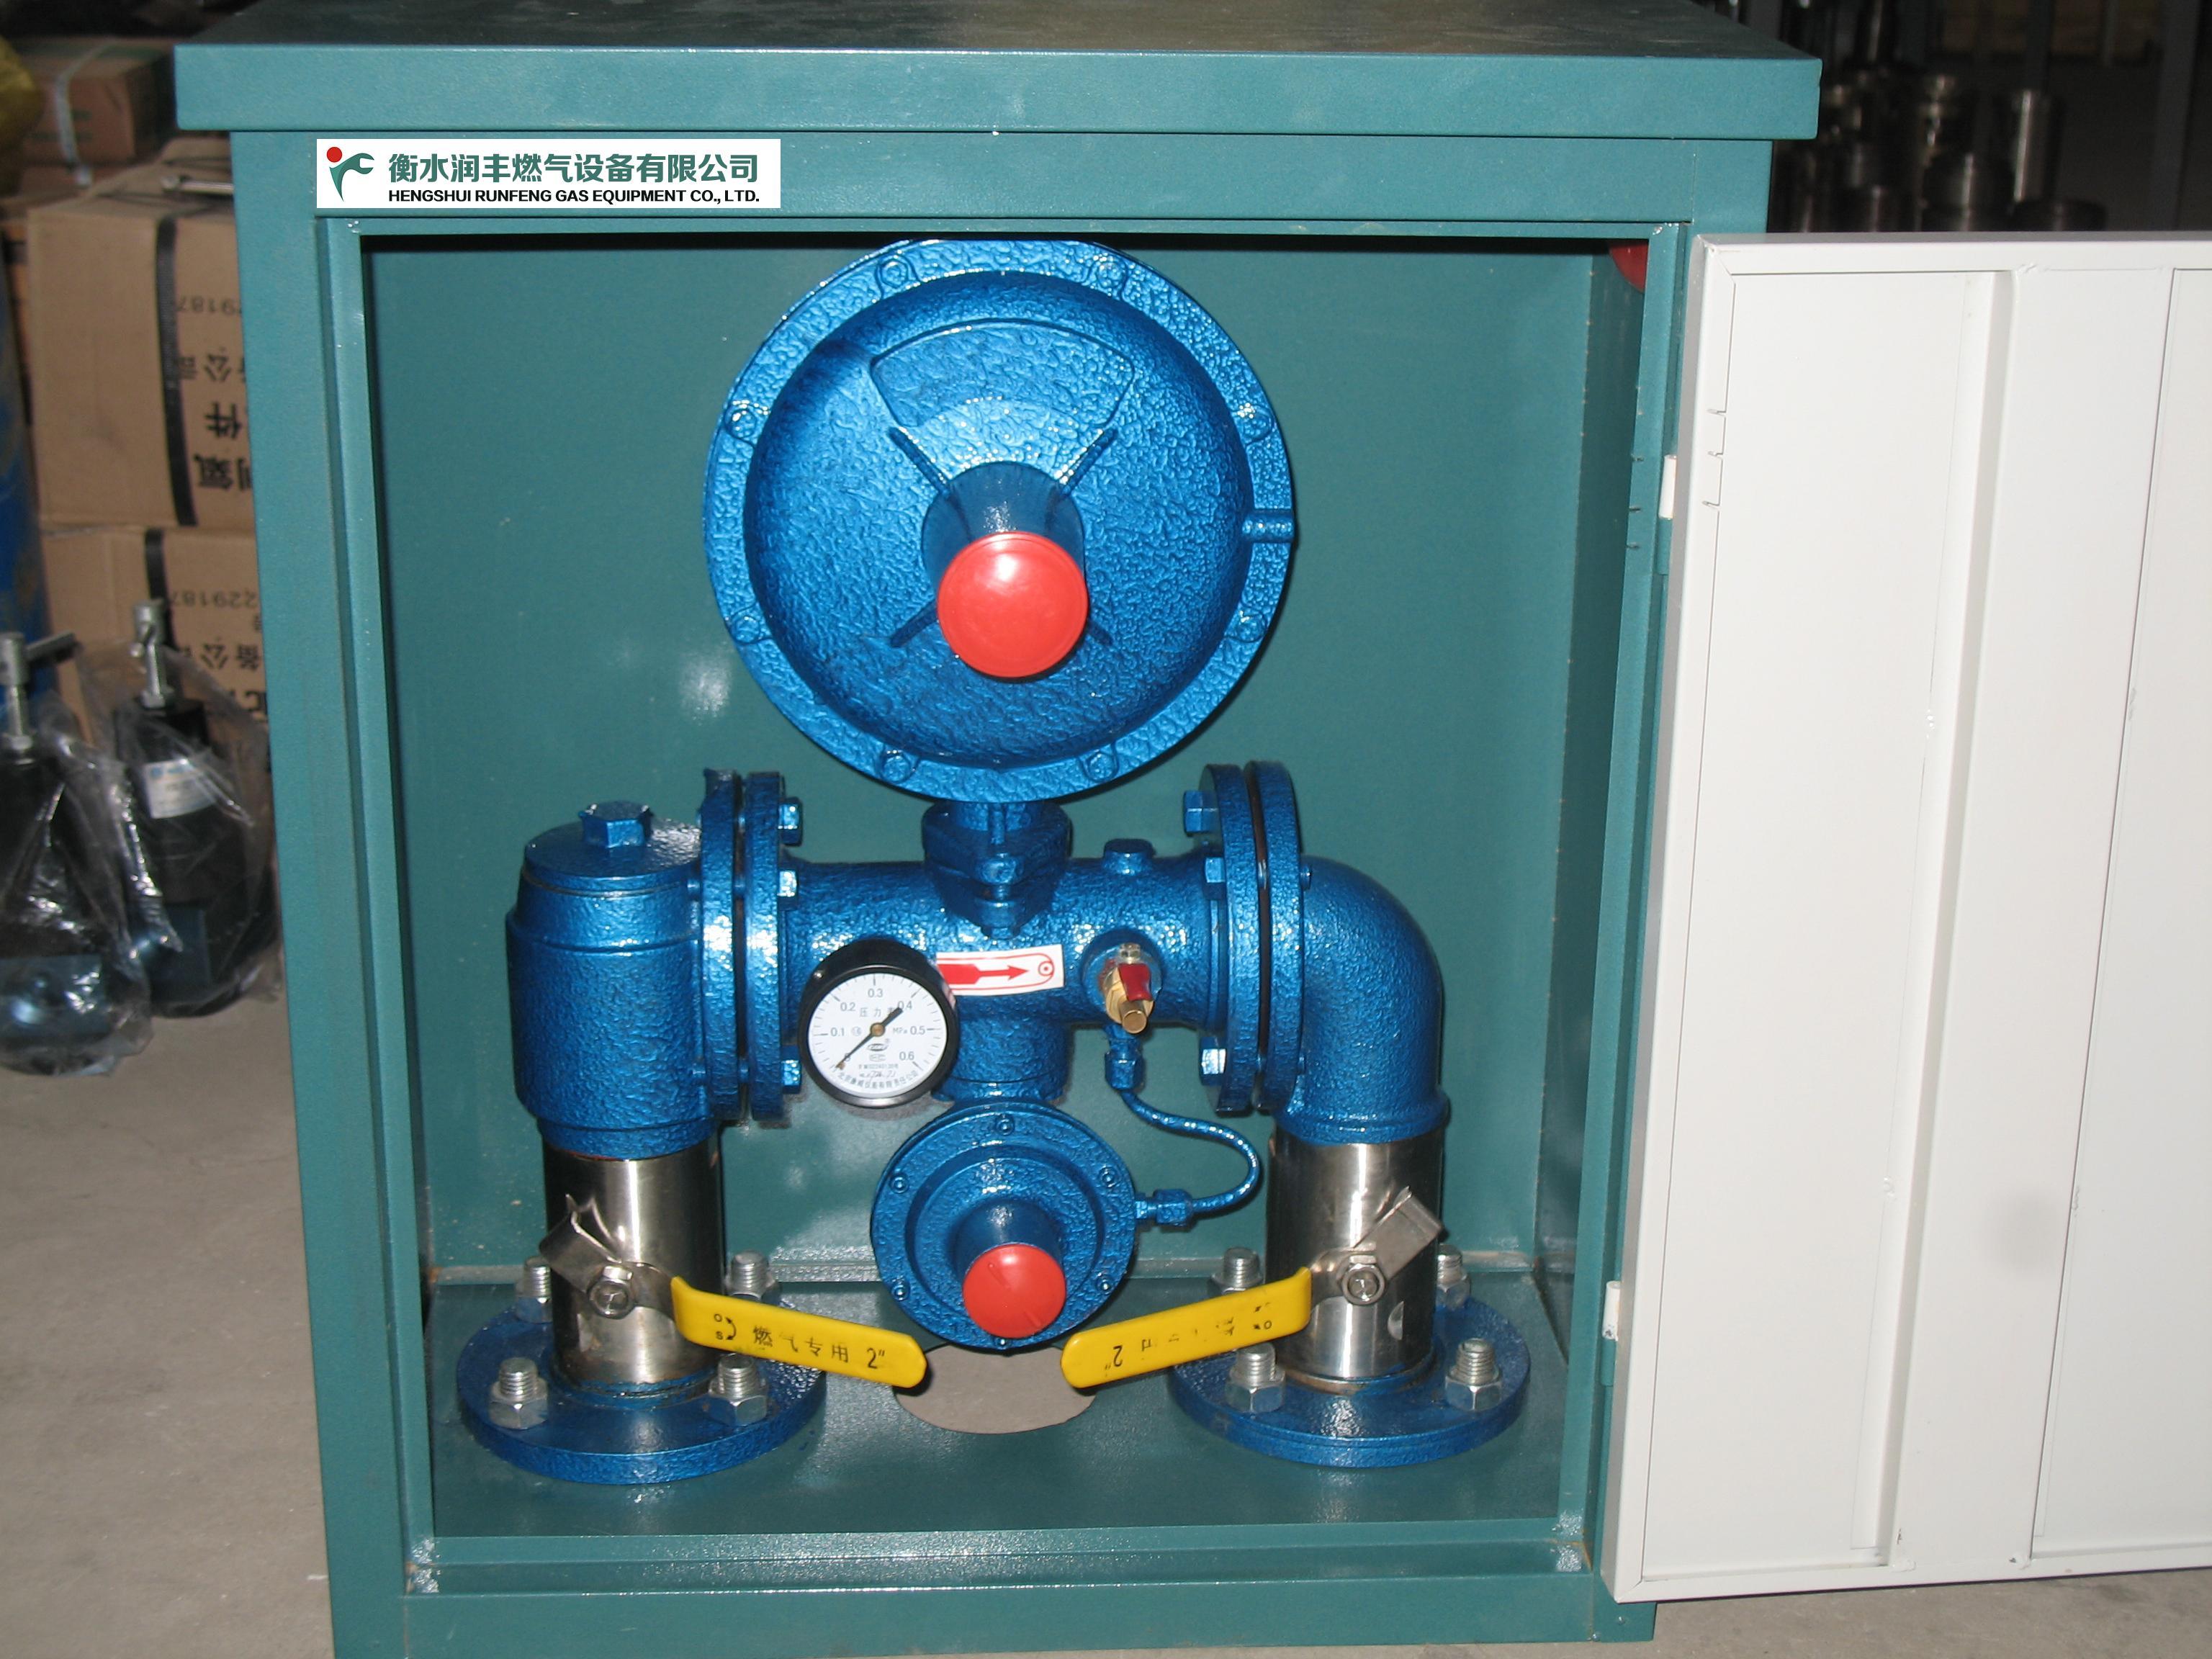 动力低压燃气调压阀调压站在燃气输配系统中的主要作用是调节和稳定系统压力